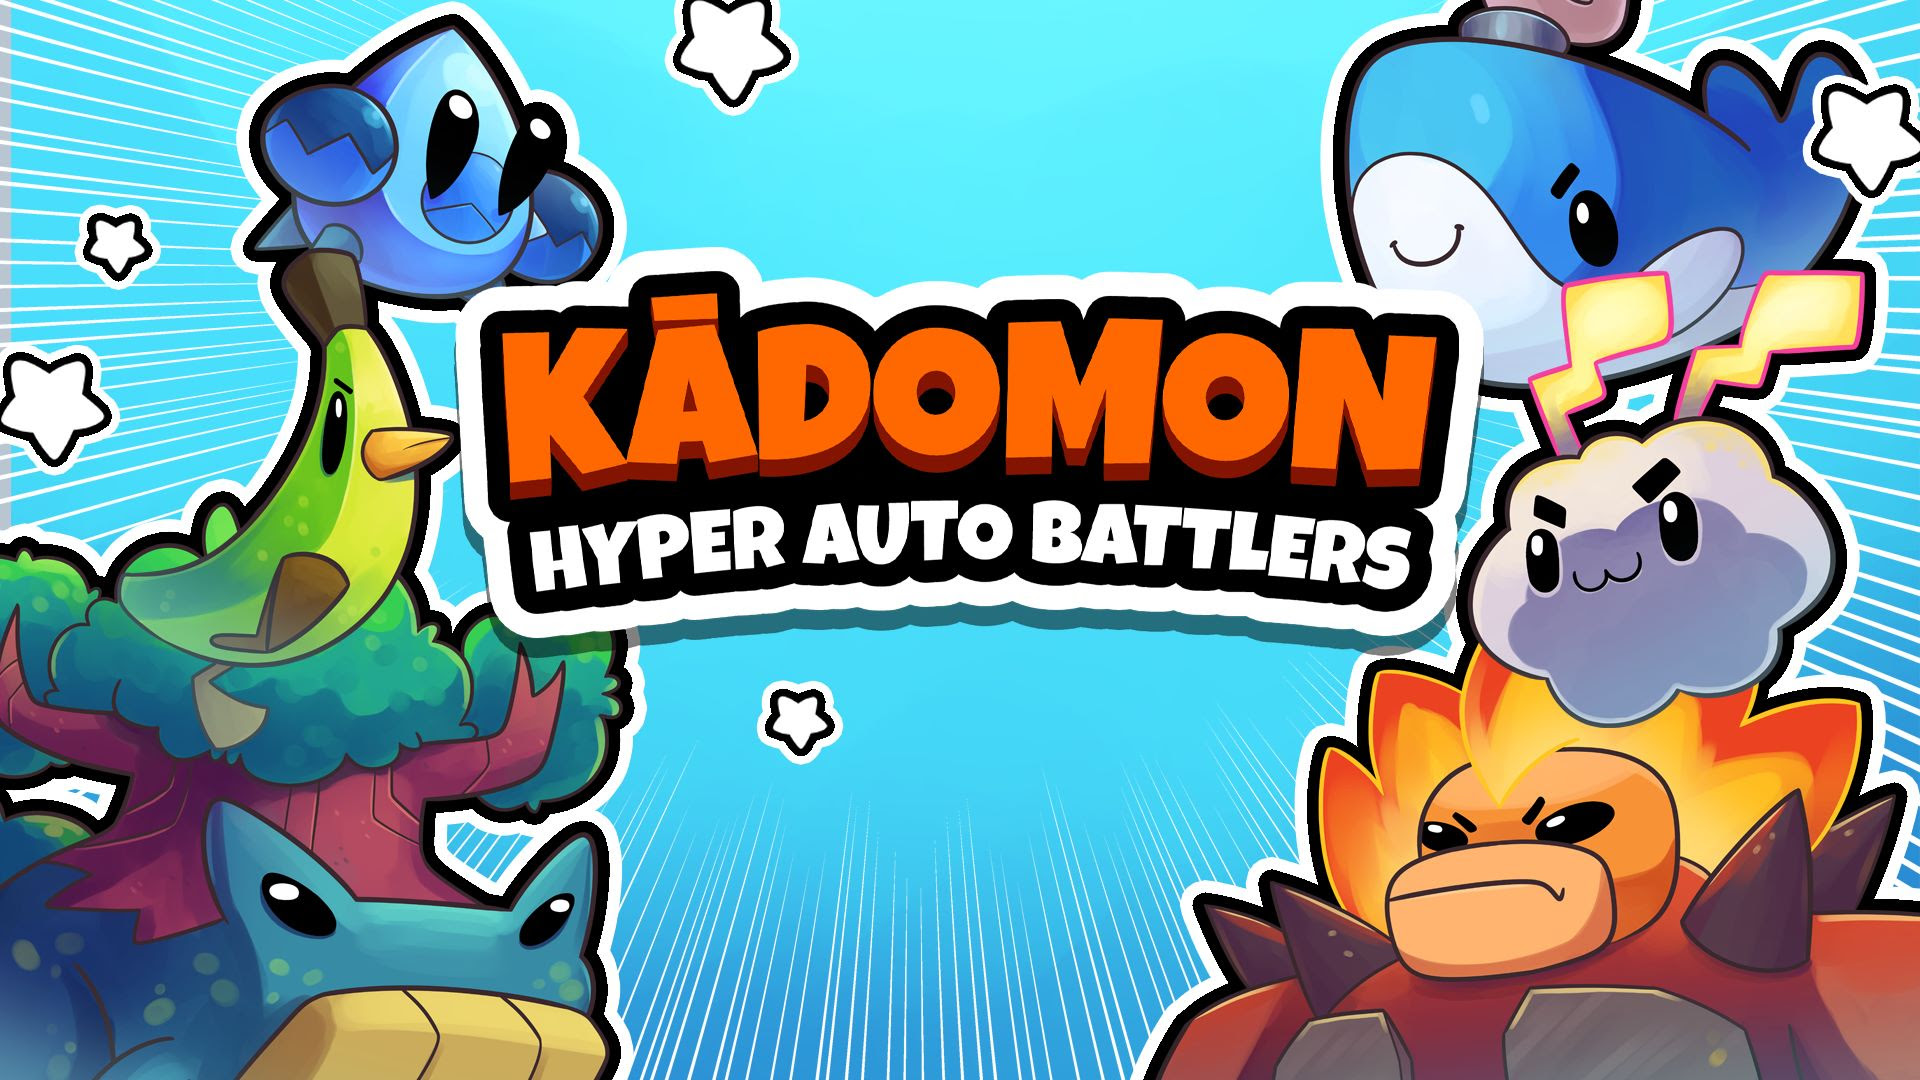 Kadomon: Hyper Auto Battlers